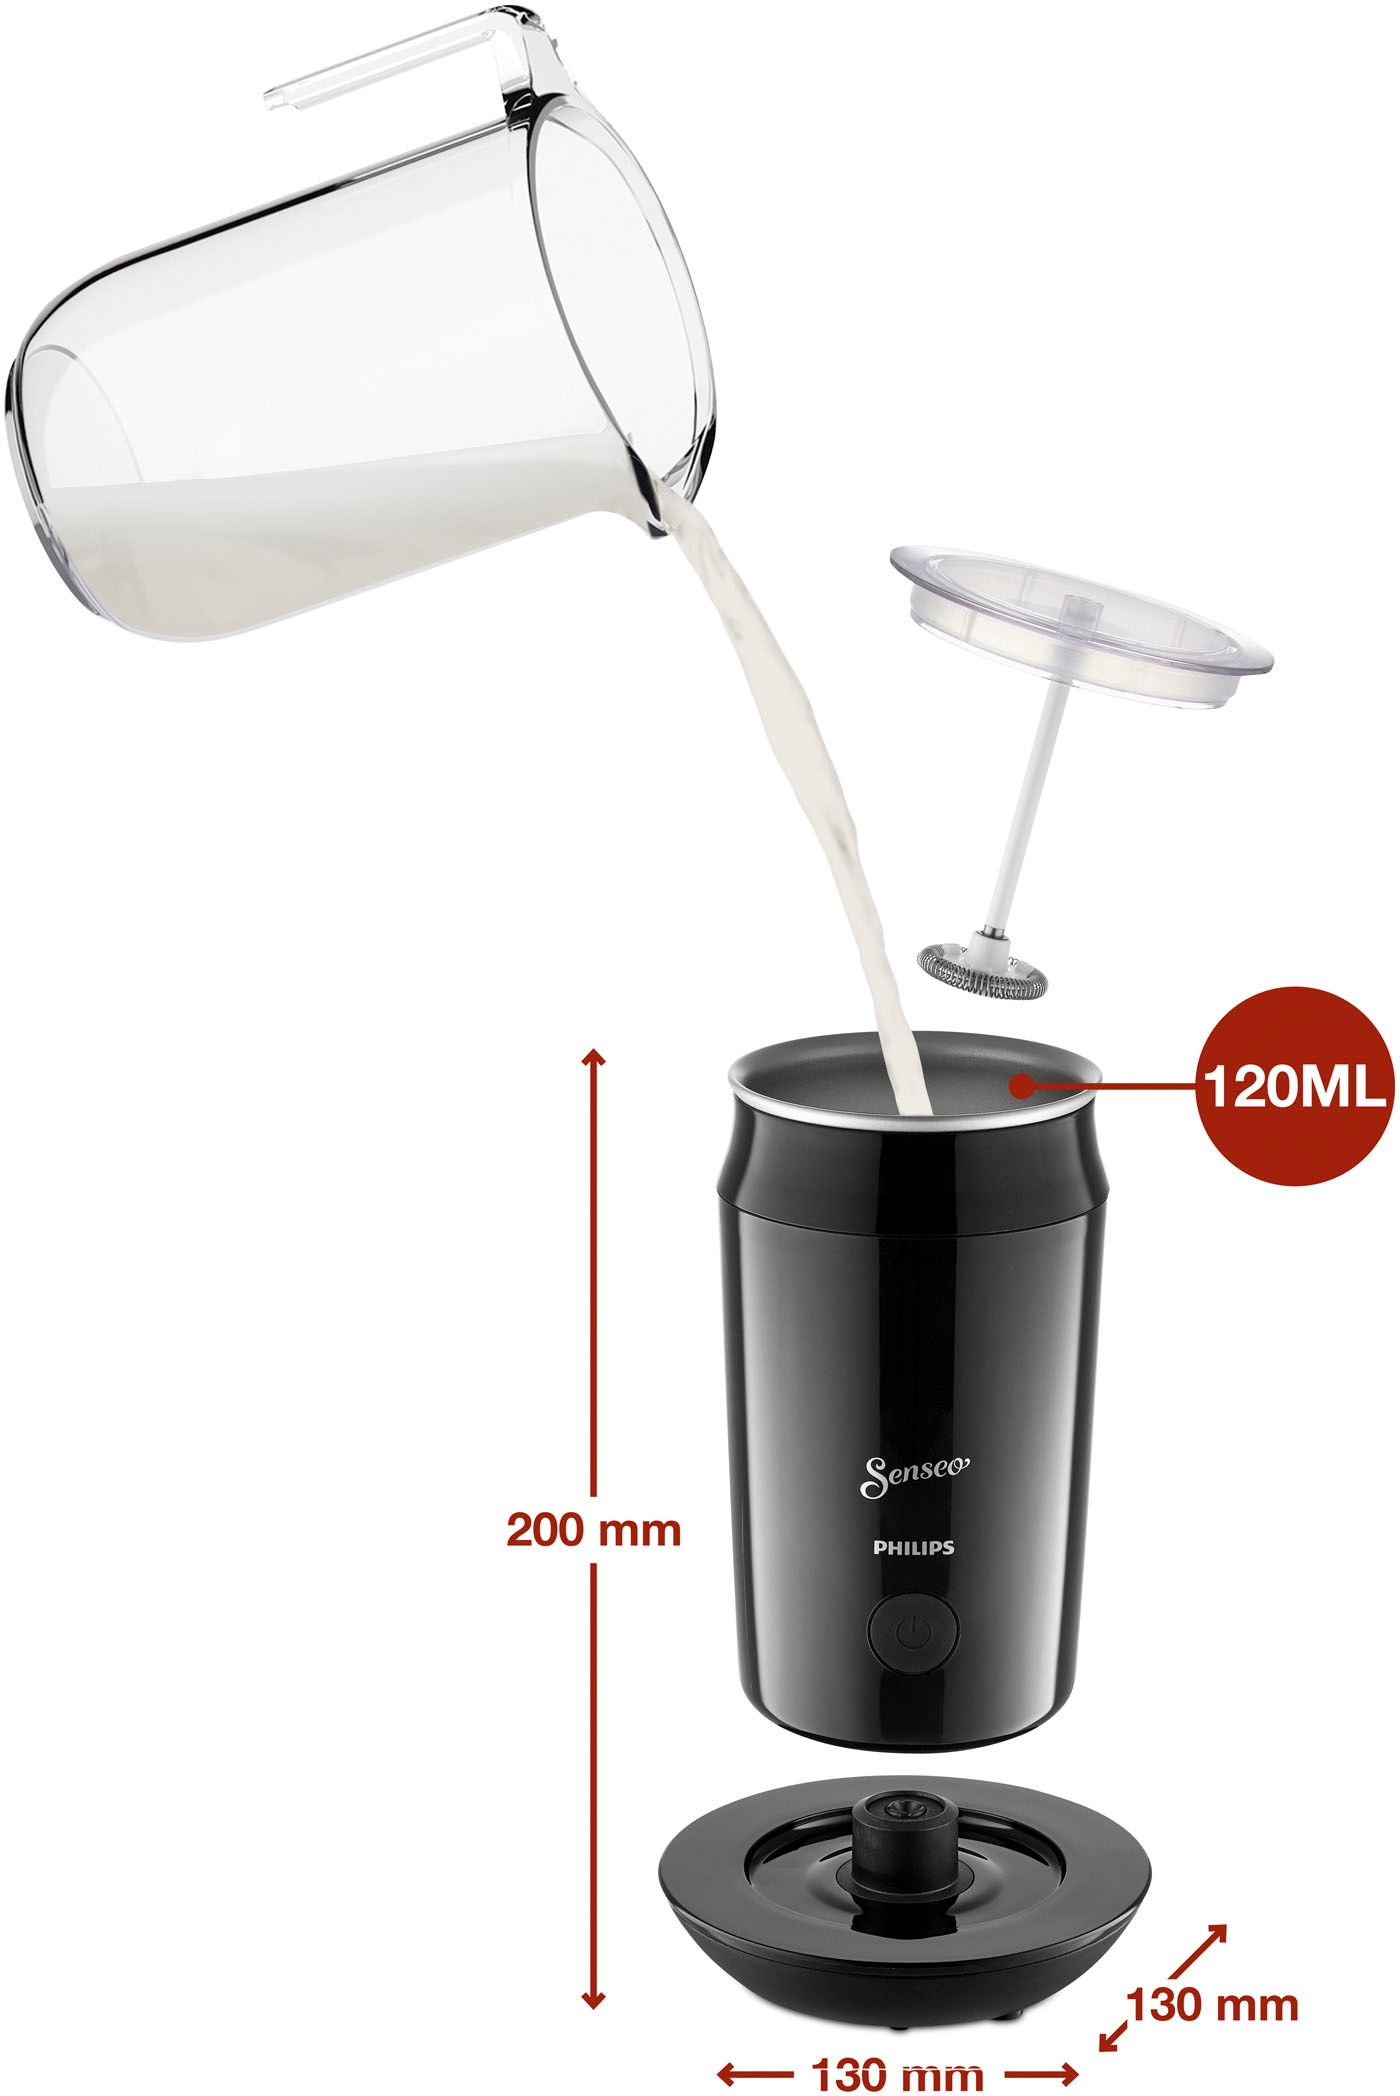 € HD6553/65«, inkl. von 79,99 Senseo UVP »Original Philips online OTTO im bei Wert jetzt Kaffeepadmaschine Milchaufschäumer